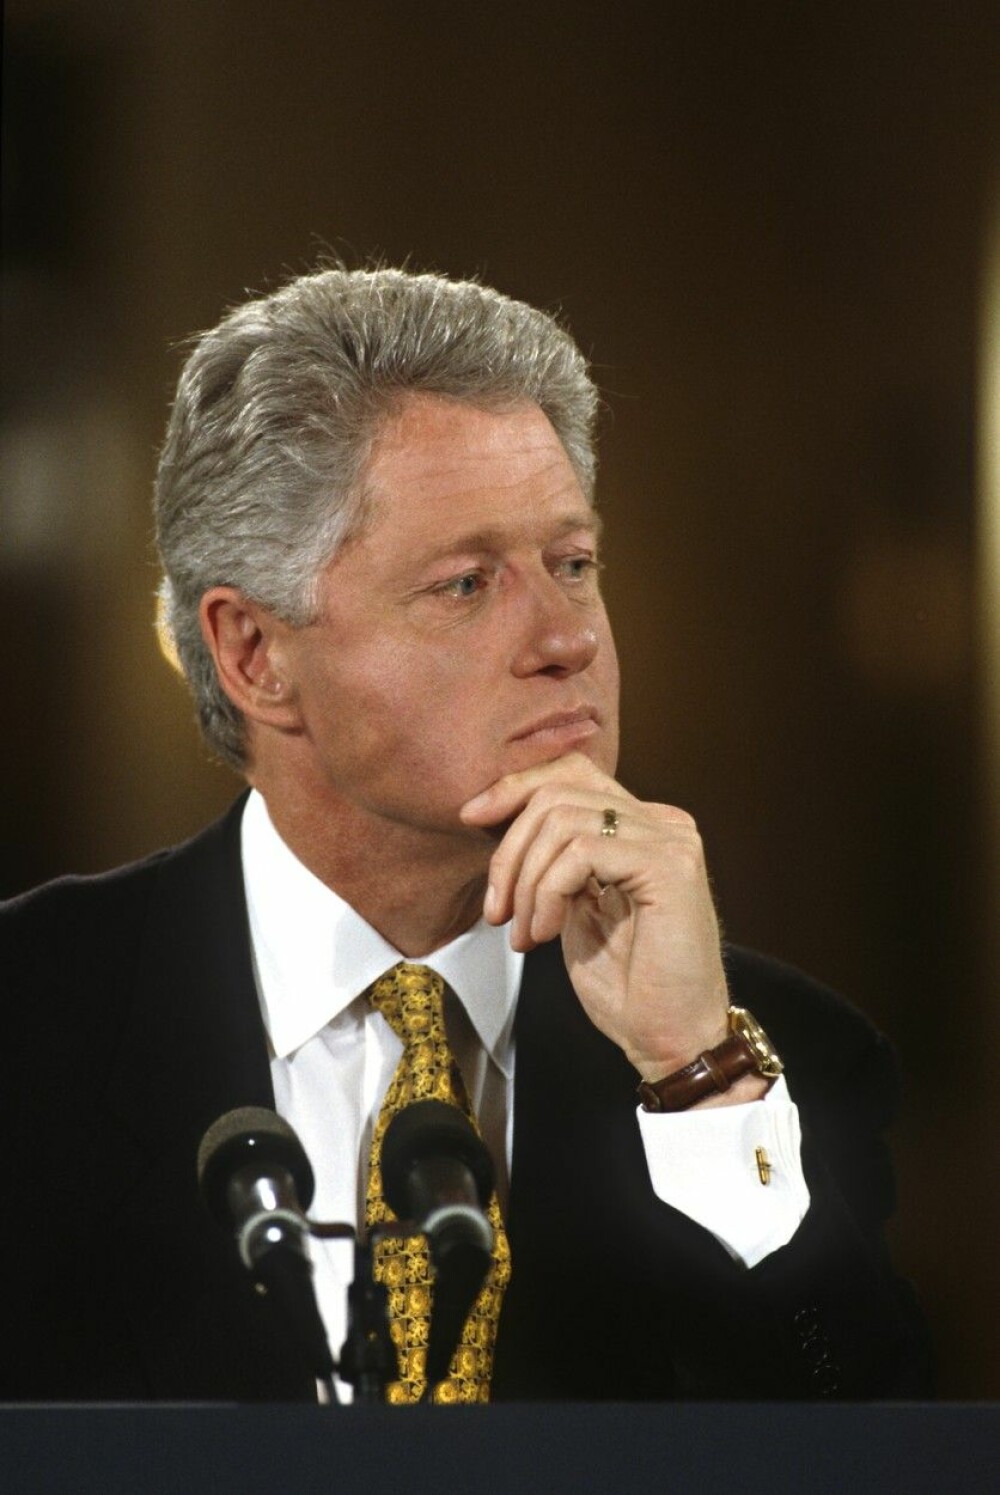 Bill Clinton, dezvăluiri scandaloase despre relația intimă cu Monica Lewinsky - Imaginea 2